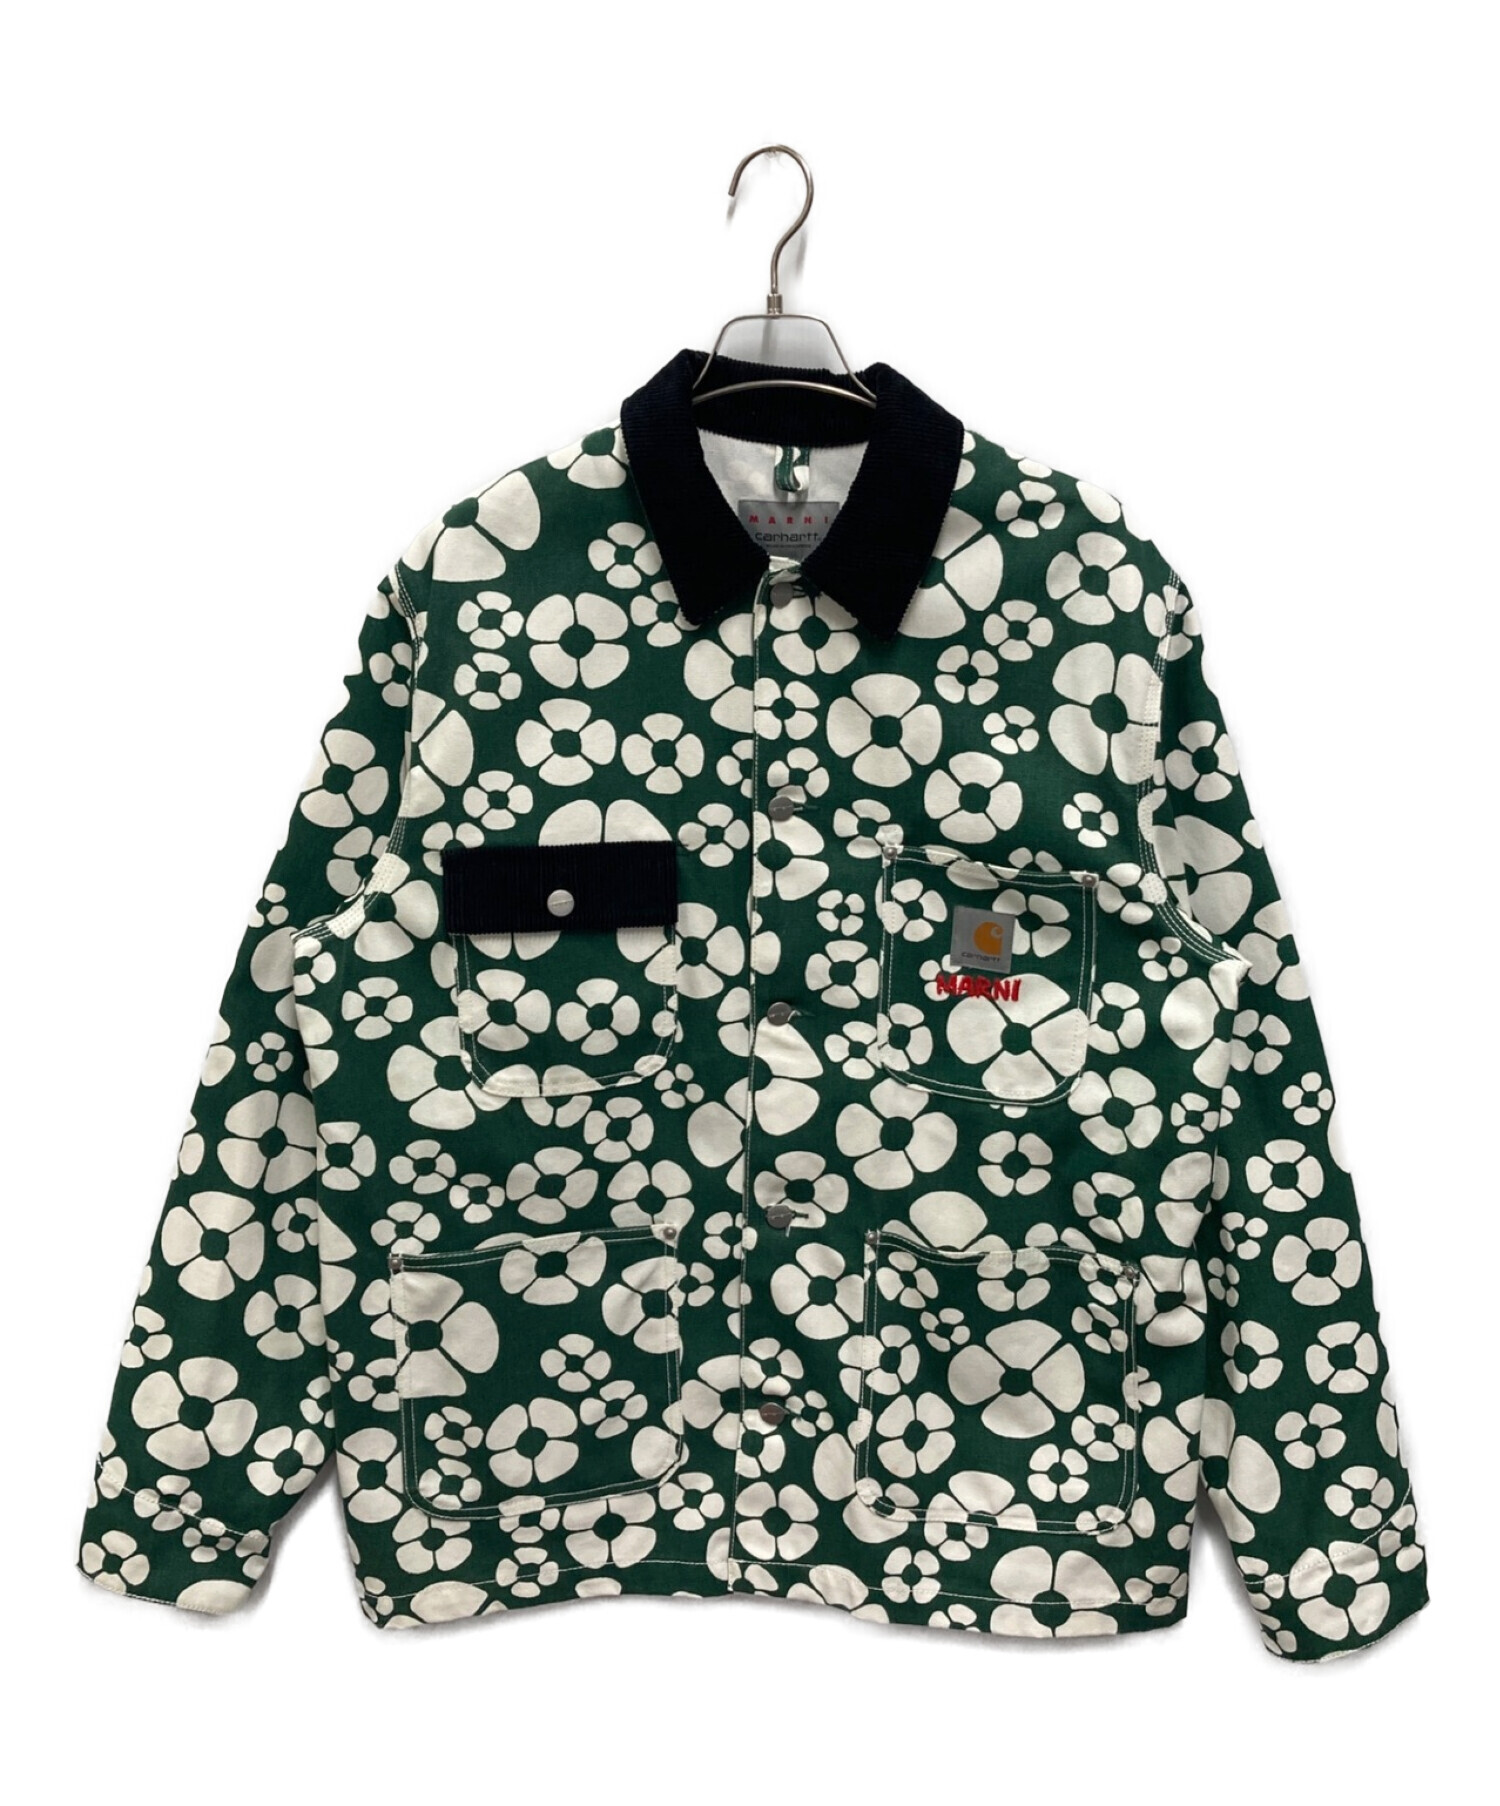 MARNI (マルニ) CarHartt (カーハート) フローラル シャツジャケット CHORE COAT グリーン サイズ:M